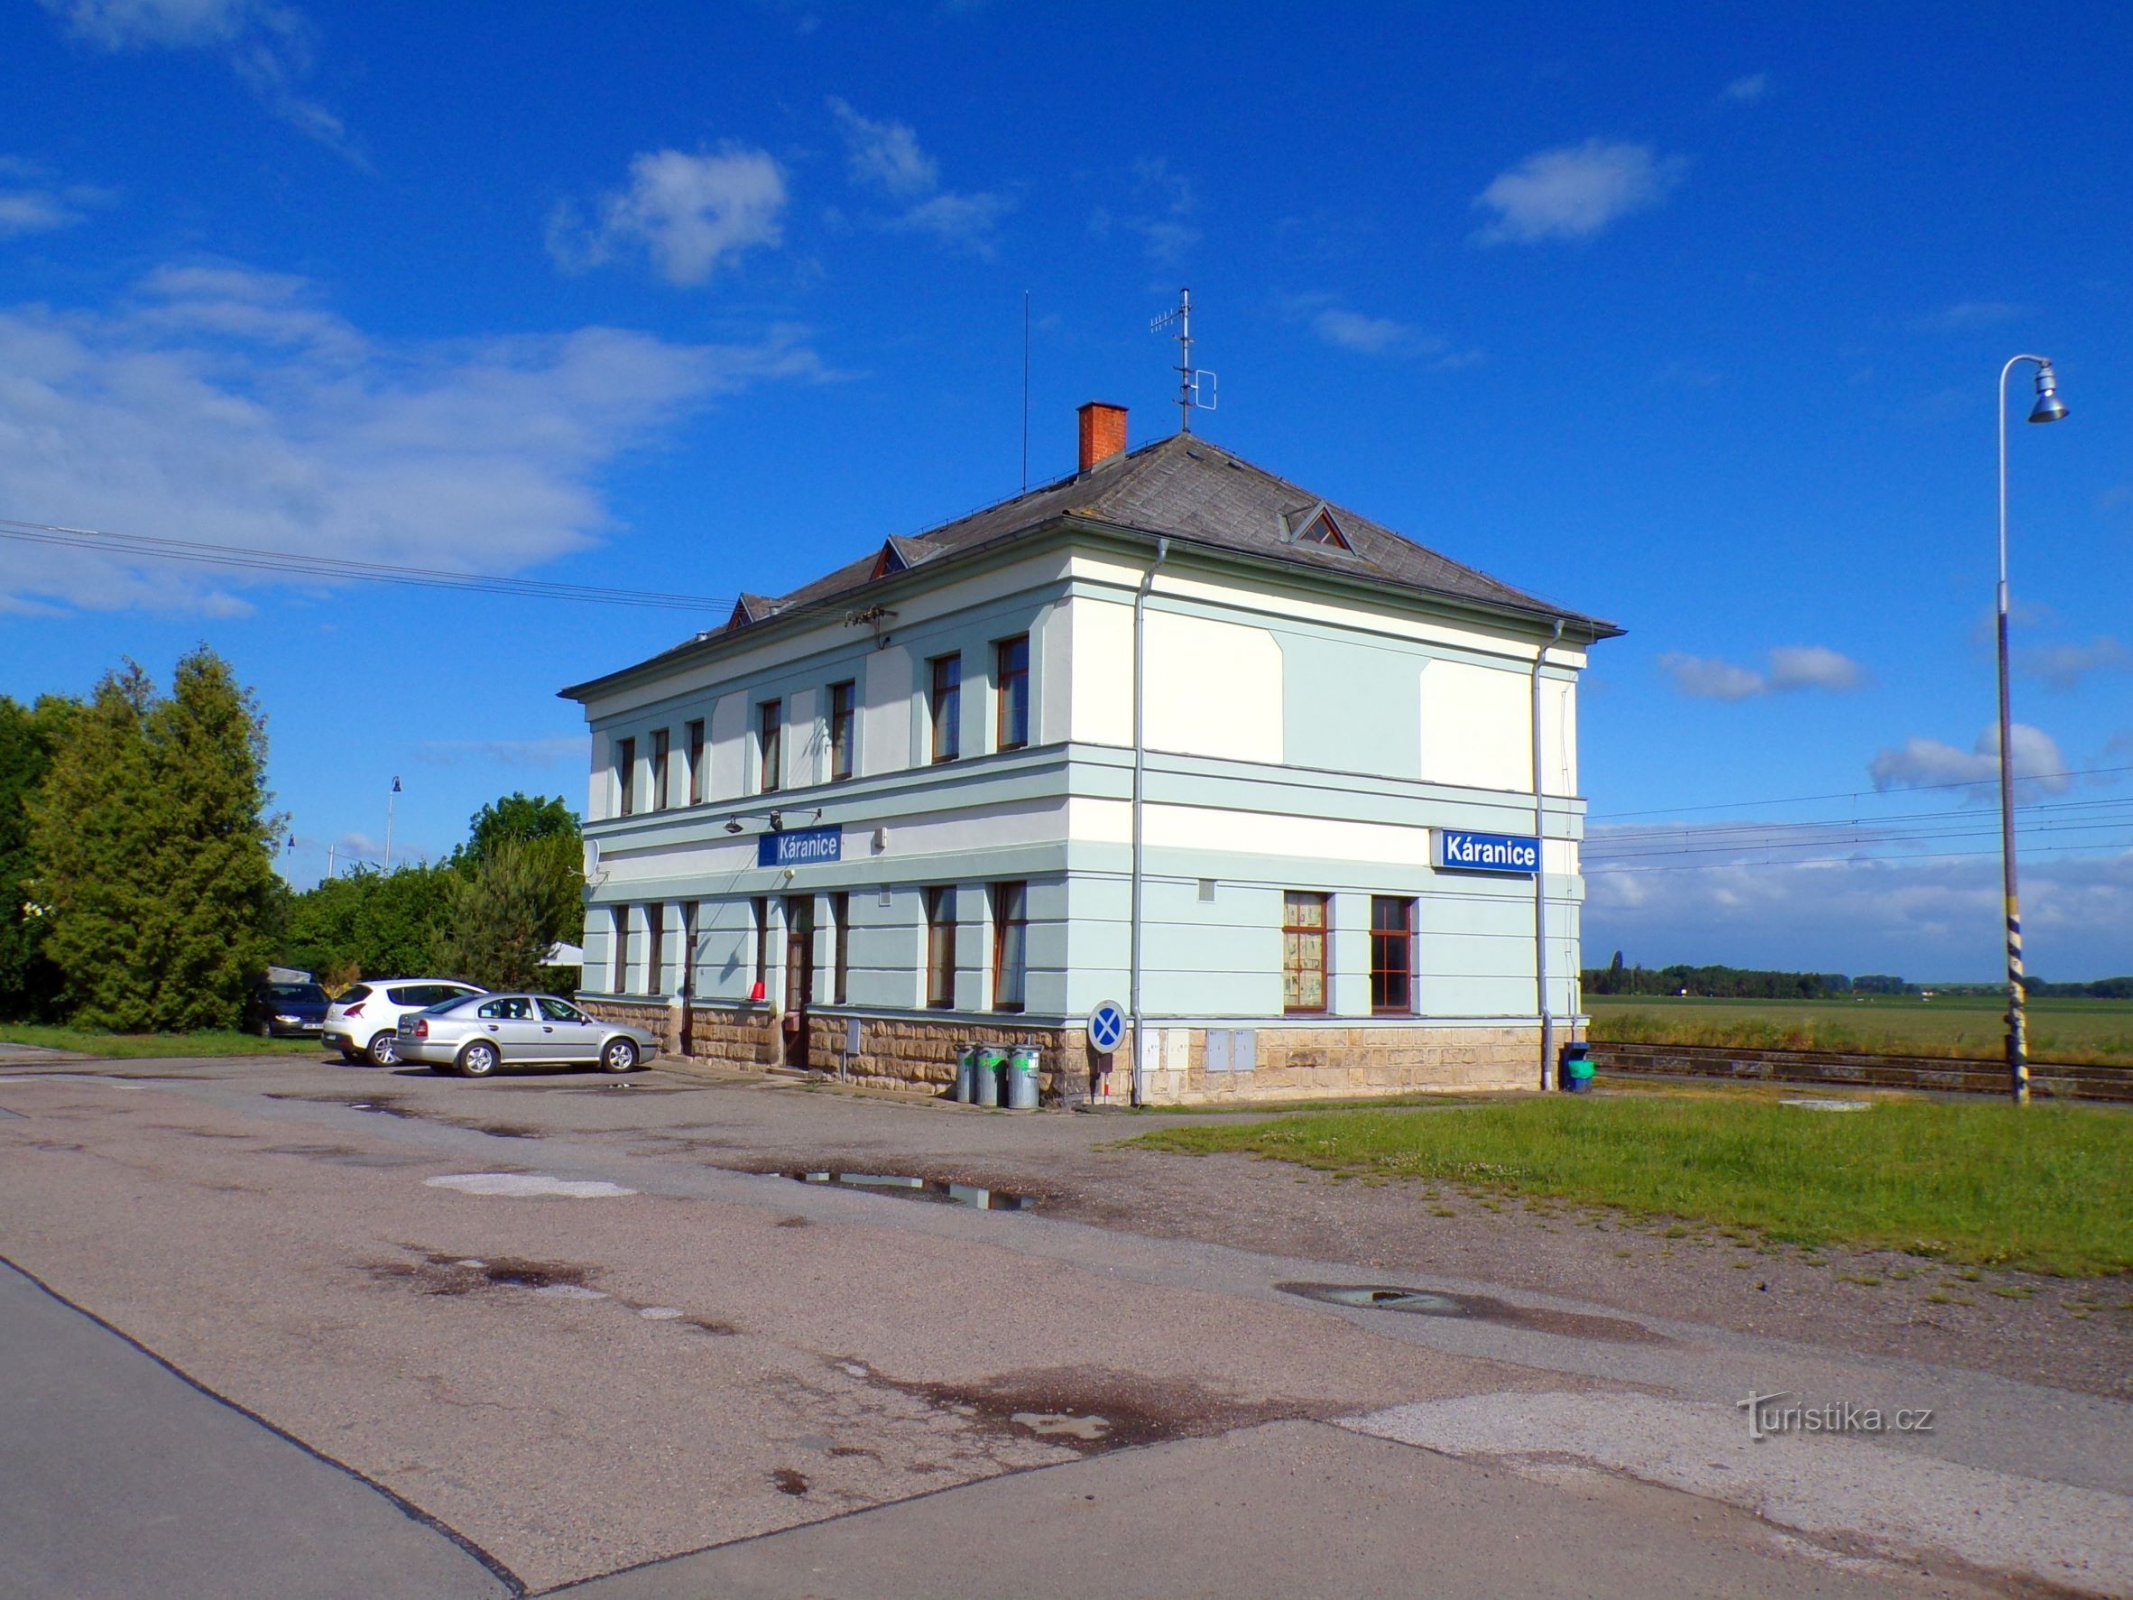 车站大楼（Karanice，29.5.2022/XNUMX/XNUMX）